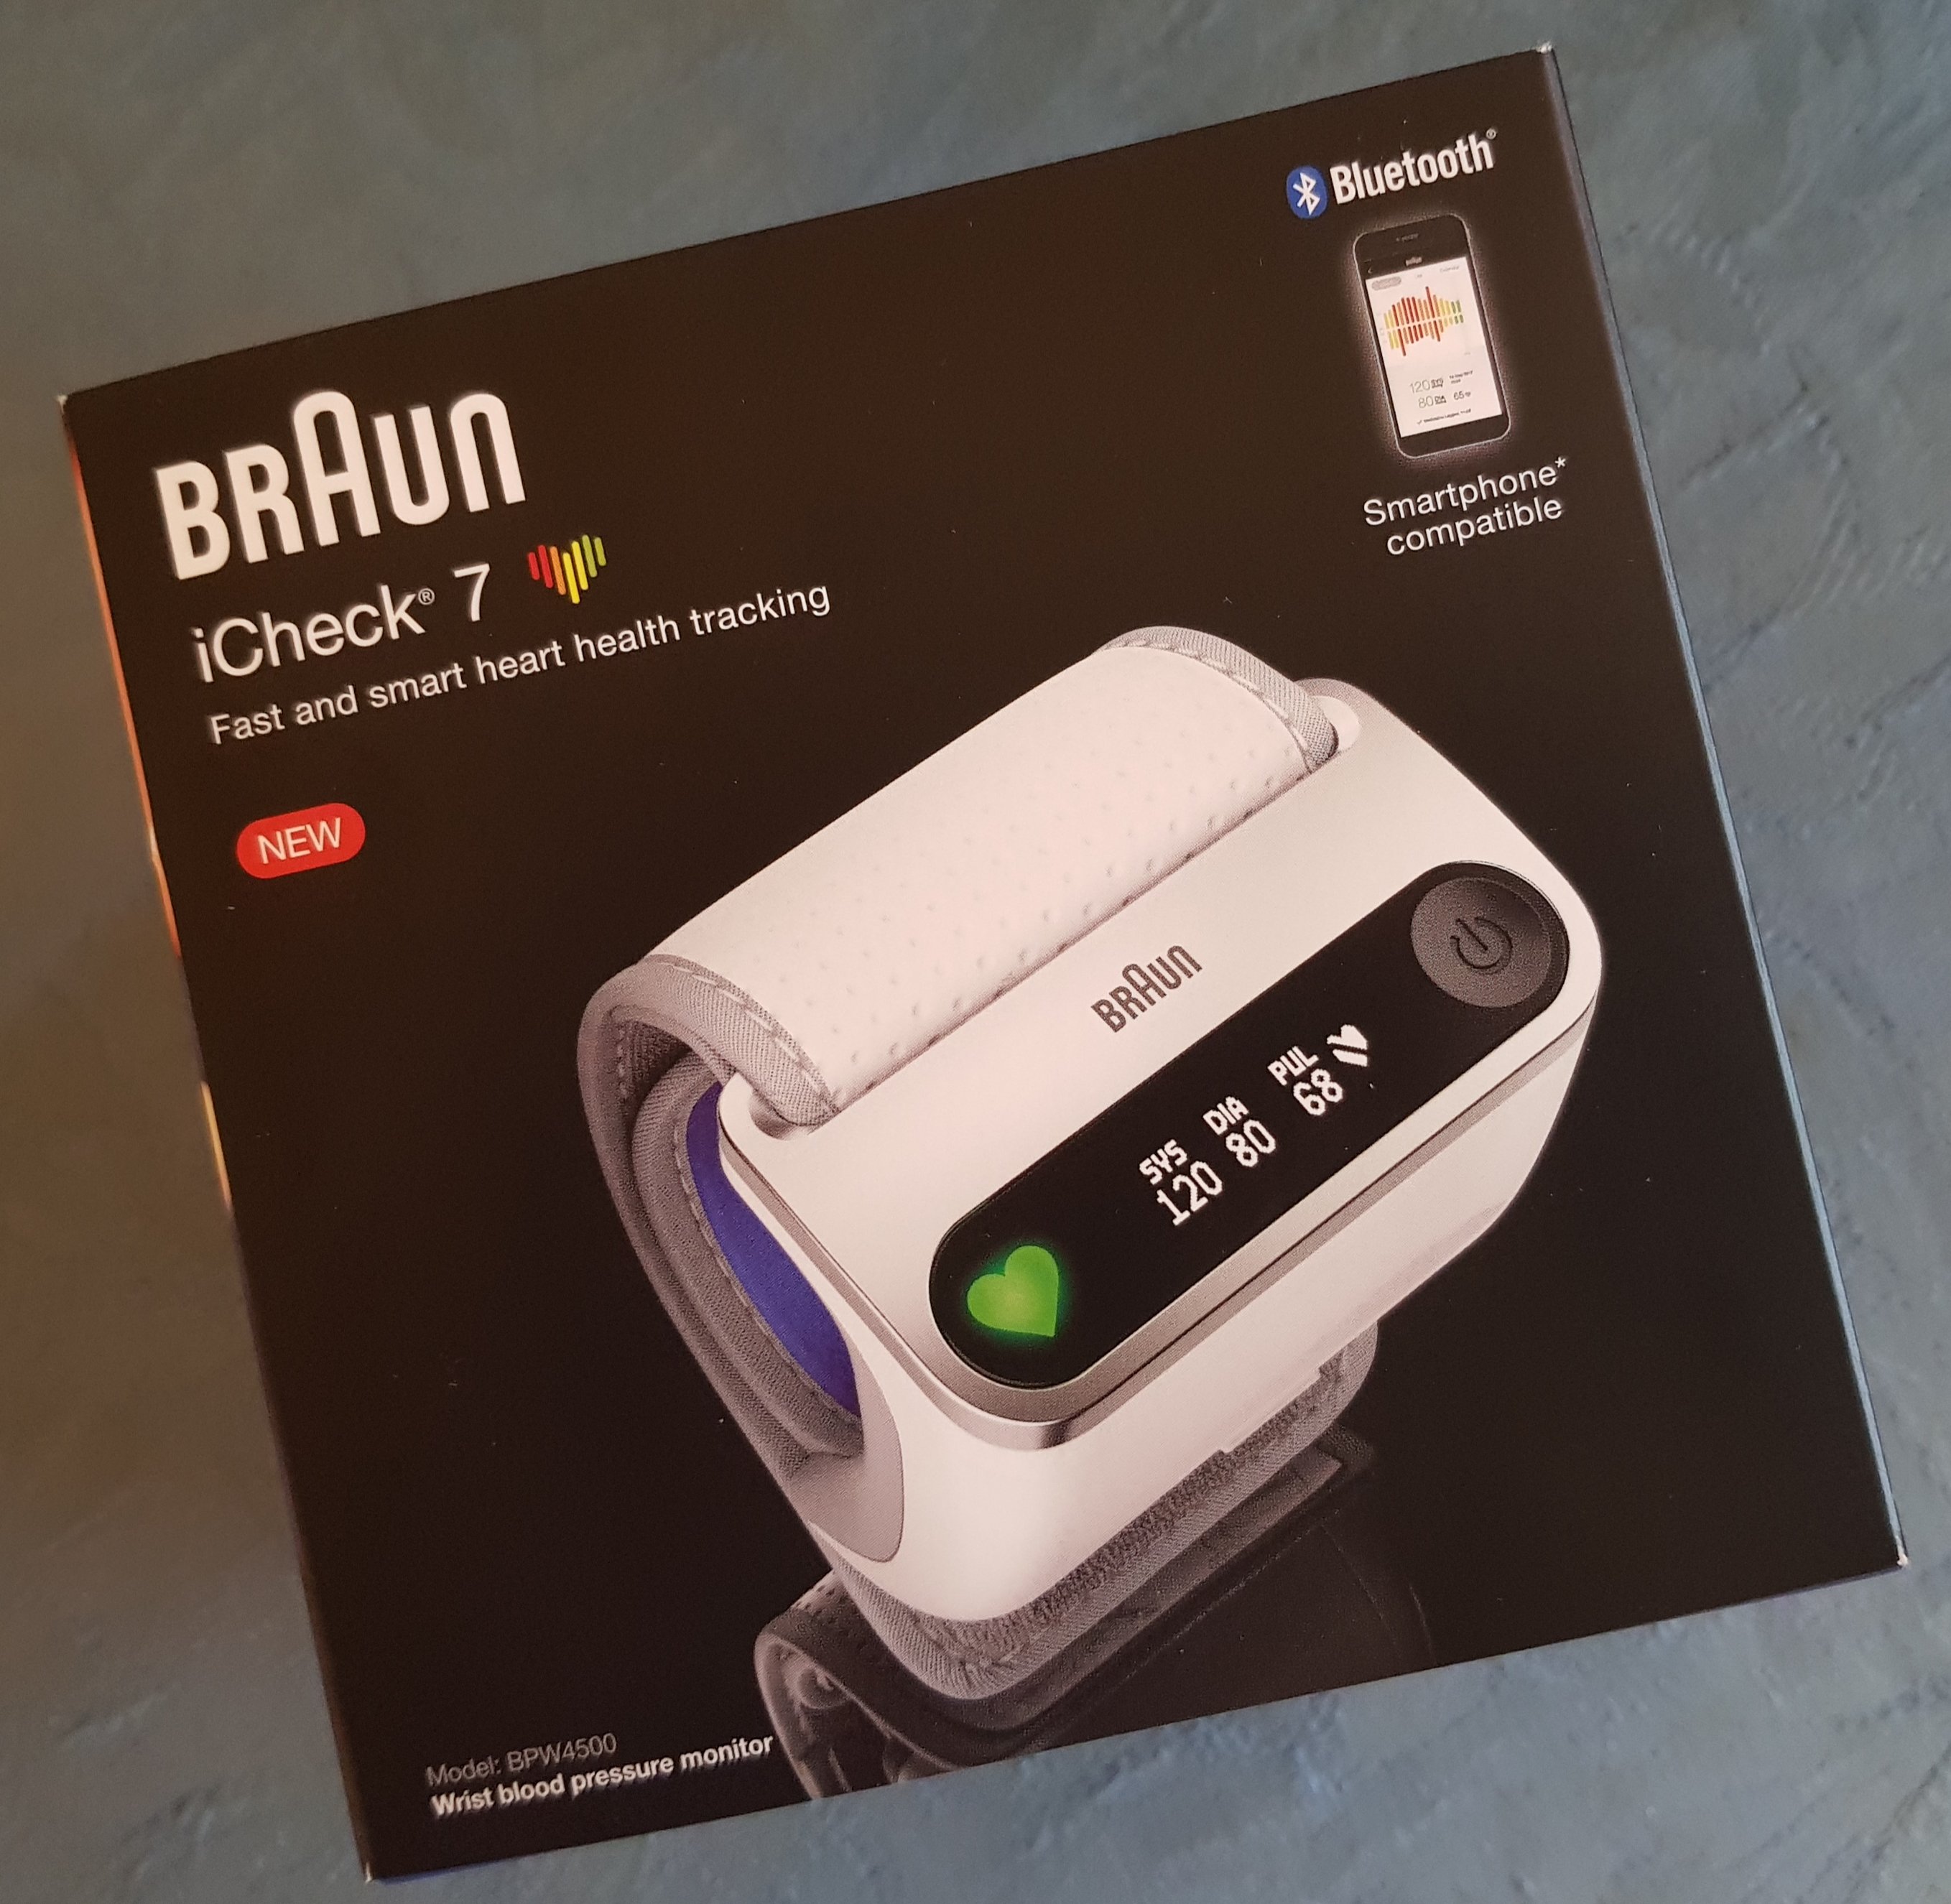 Braun iCheck 7 Wrist Blood Pressure Monitor box